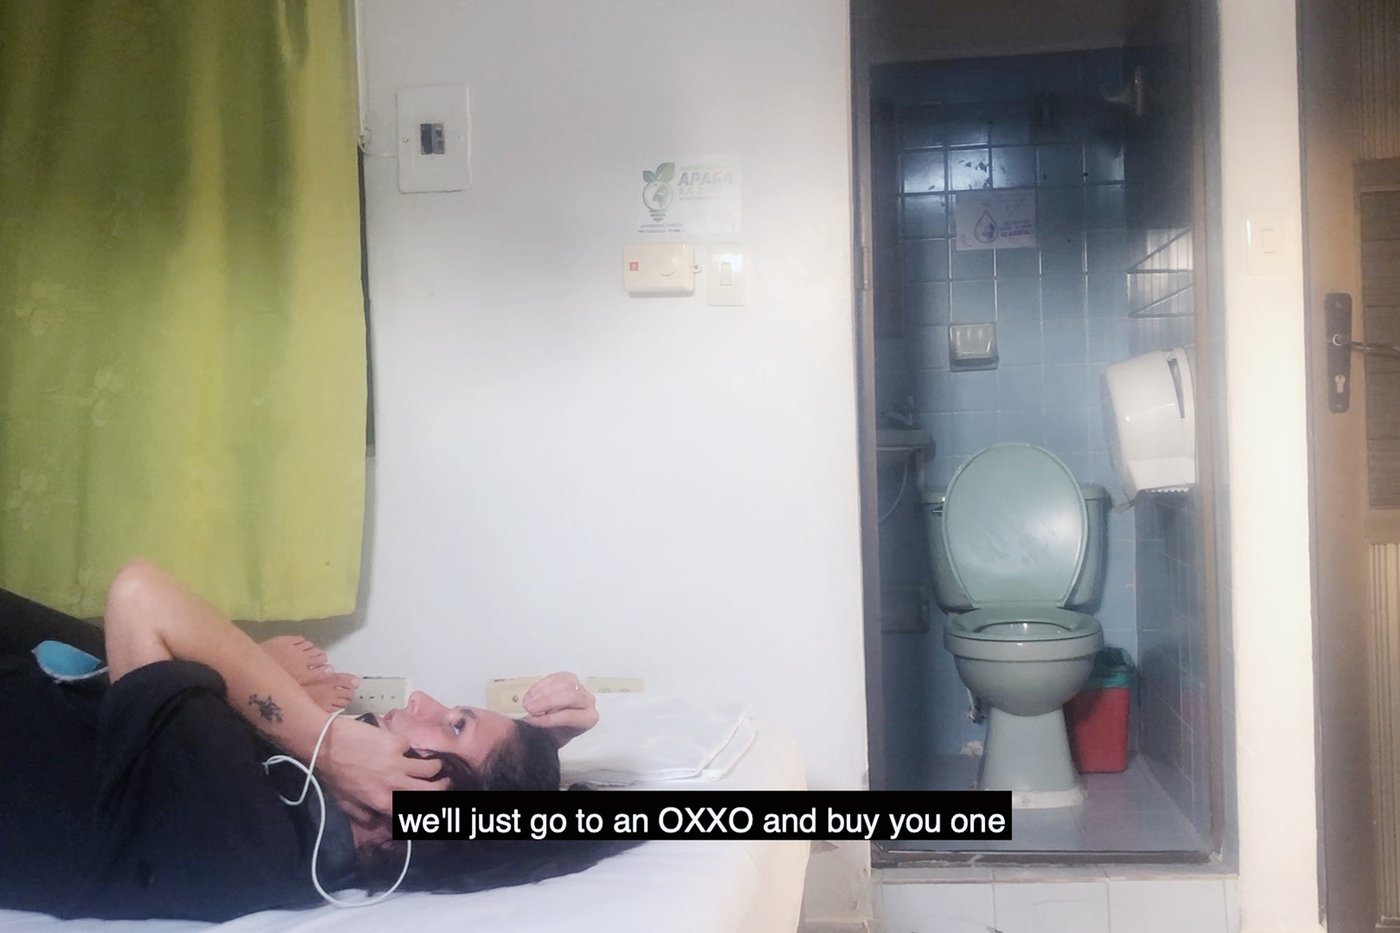 Die Abbildung zeigt ein Standbild aus dem Video CEREAL, eine Person liegt auf dem Bett und telefoniert, folgende Untertitel sind darauf zu lesen “we’ll just go to an OXXO and buy you one”. Das bedeutet: Wir werden einfach zu OXXO gehen und dir eines kaufen.